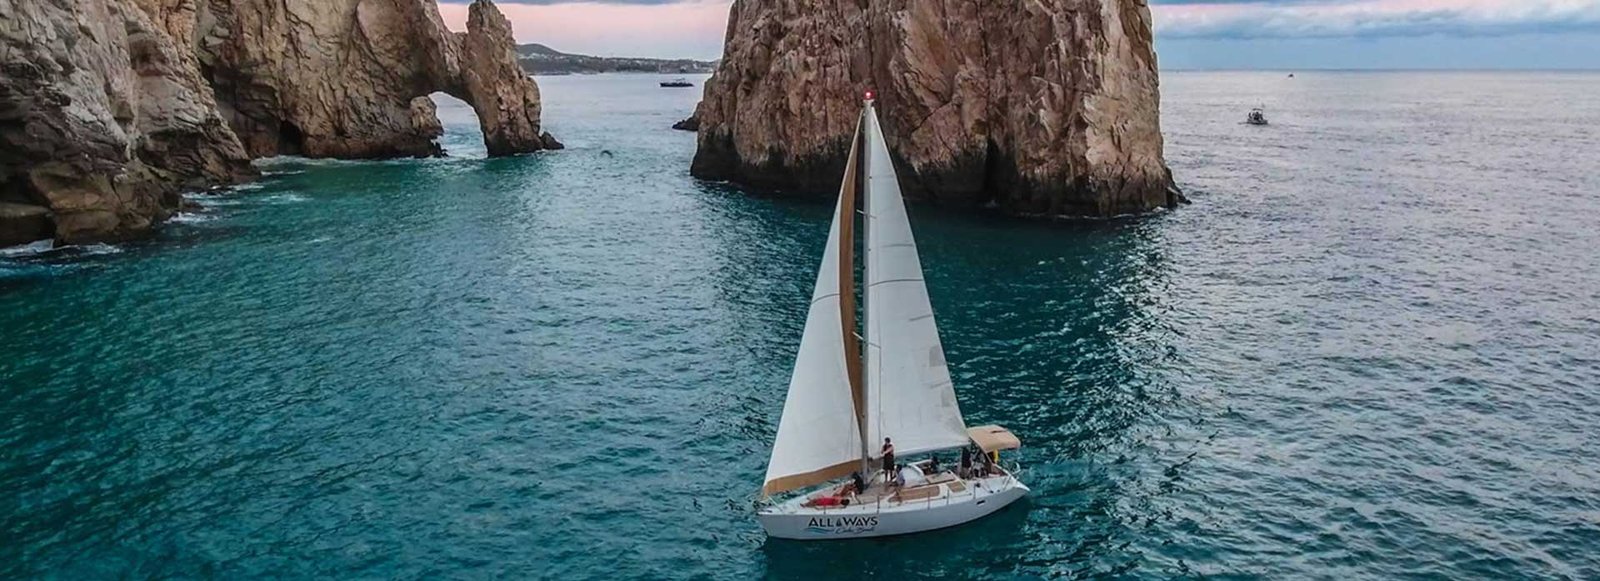 cabo san lucas sailboats